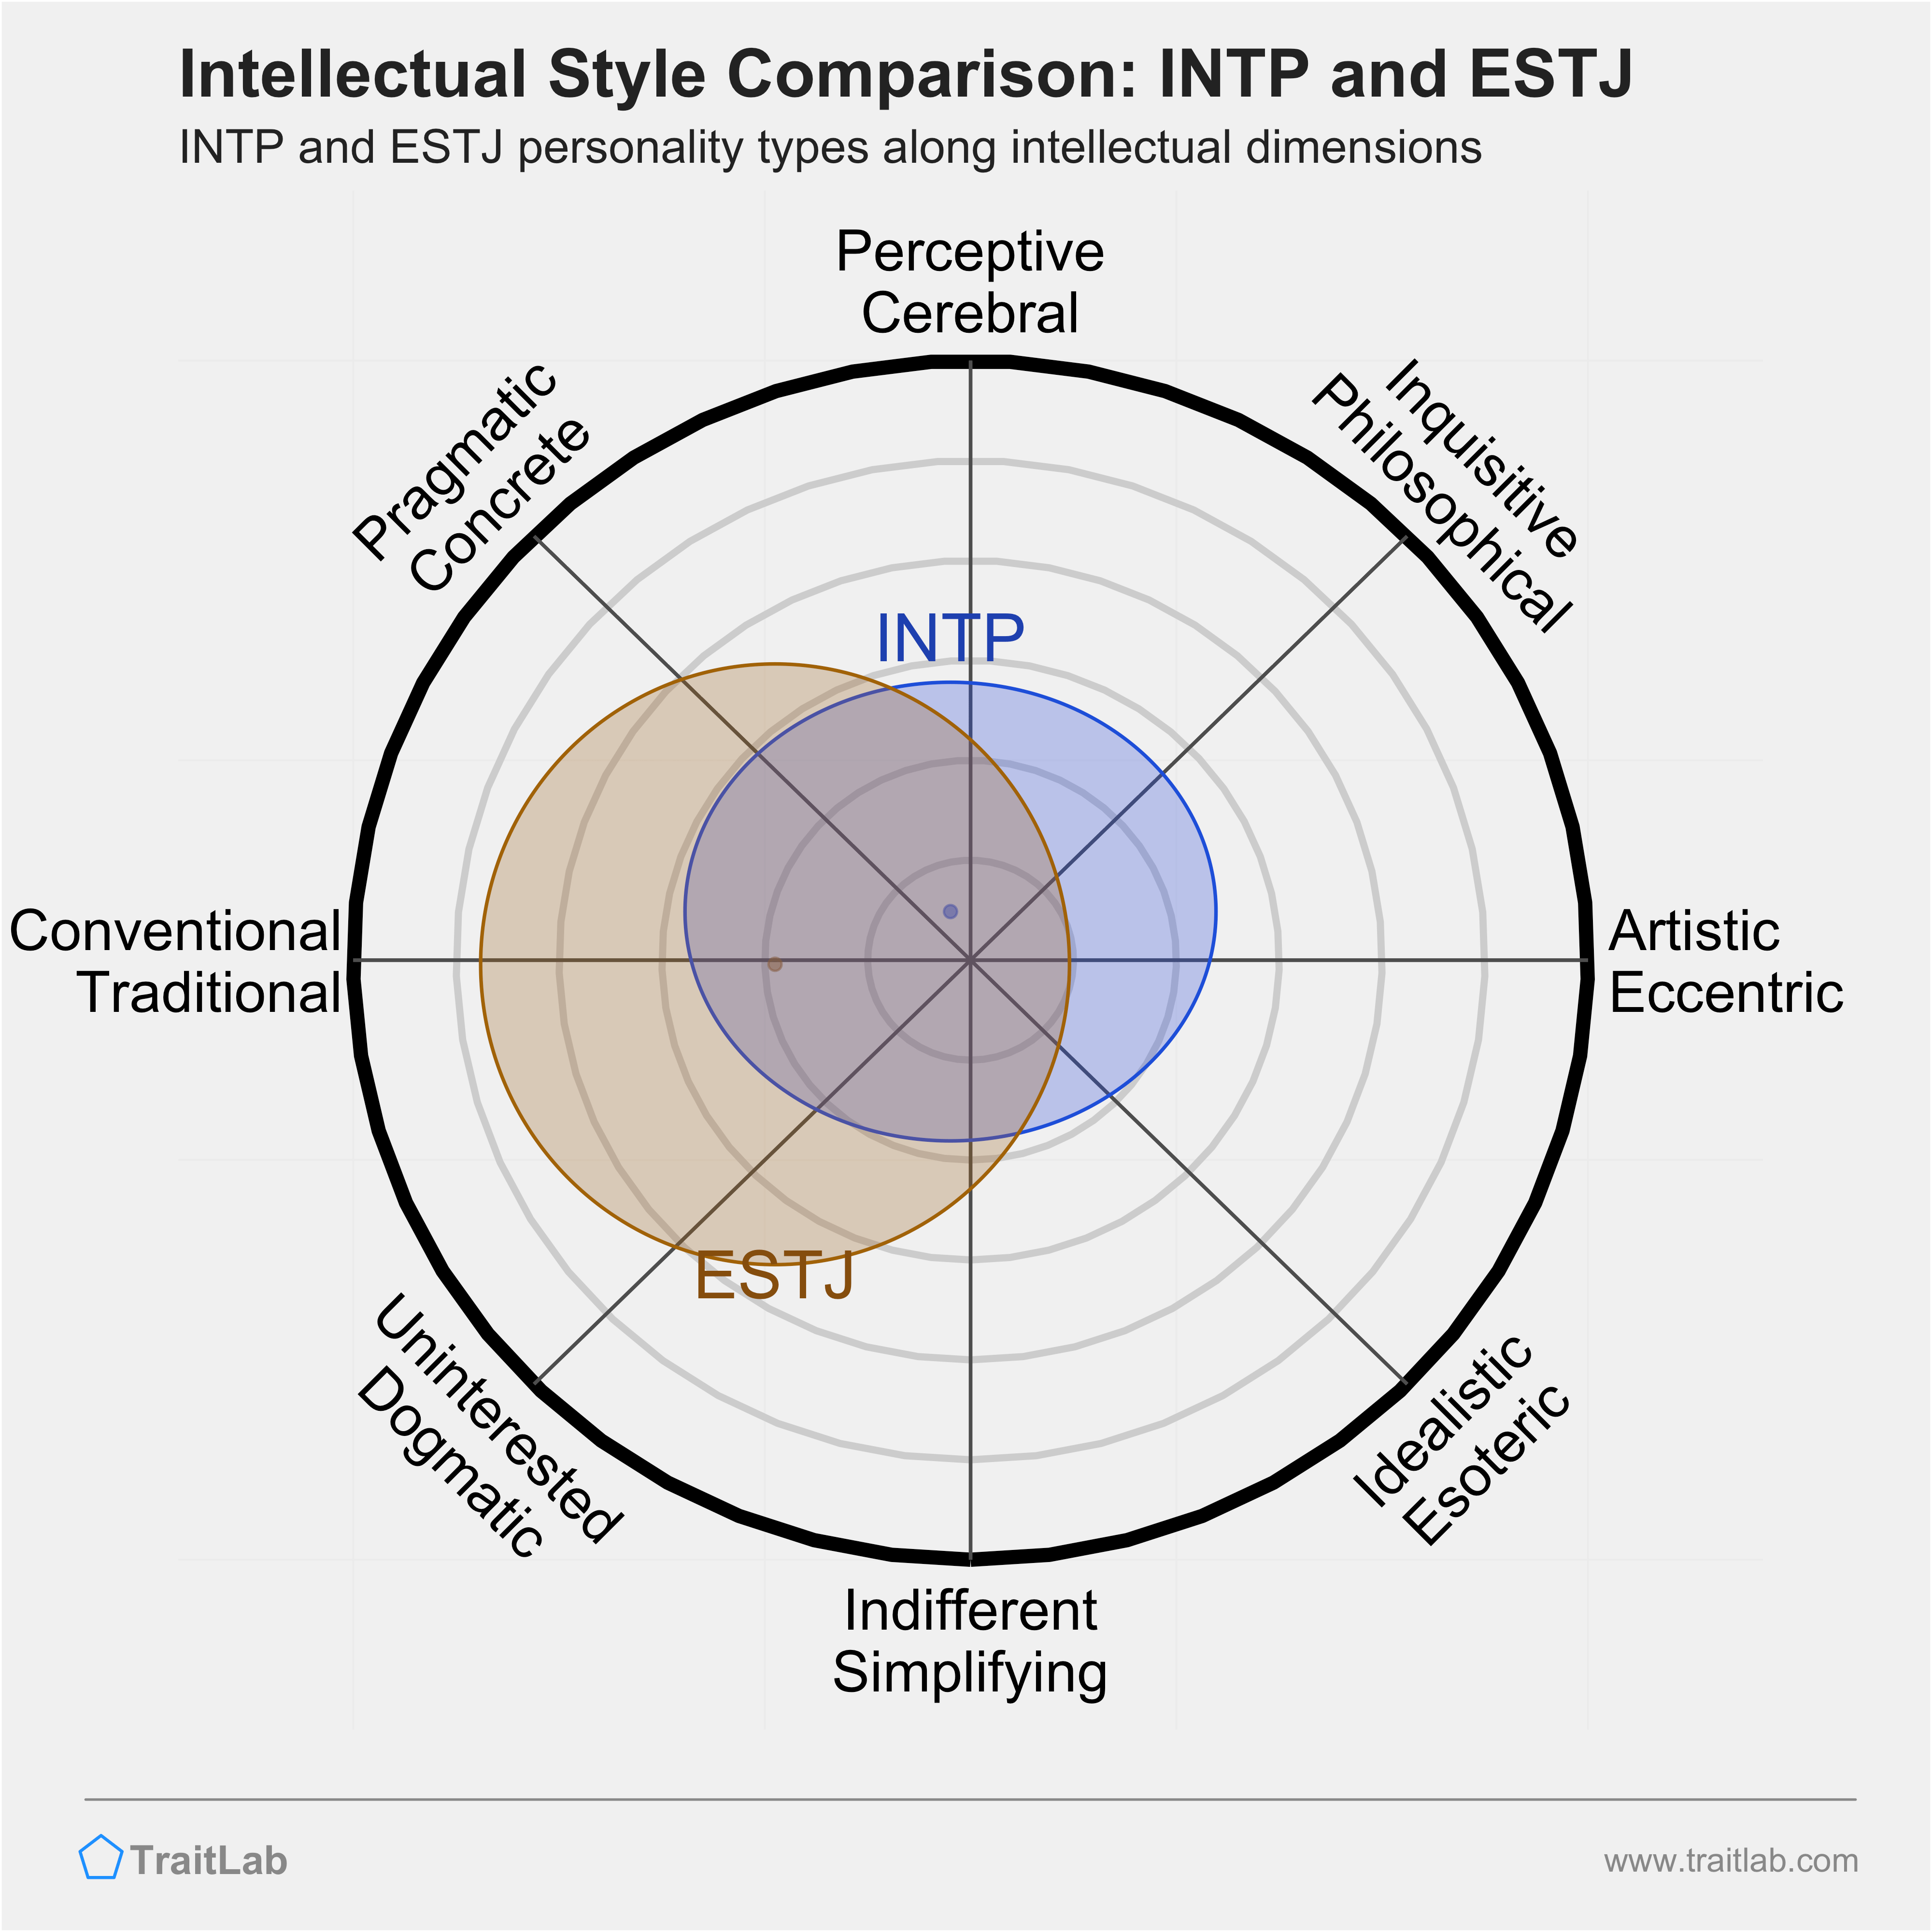 INTP and ESTJ comparison across intellectual dimensions